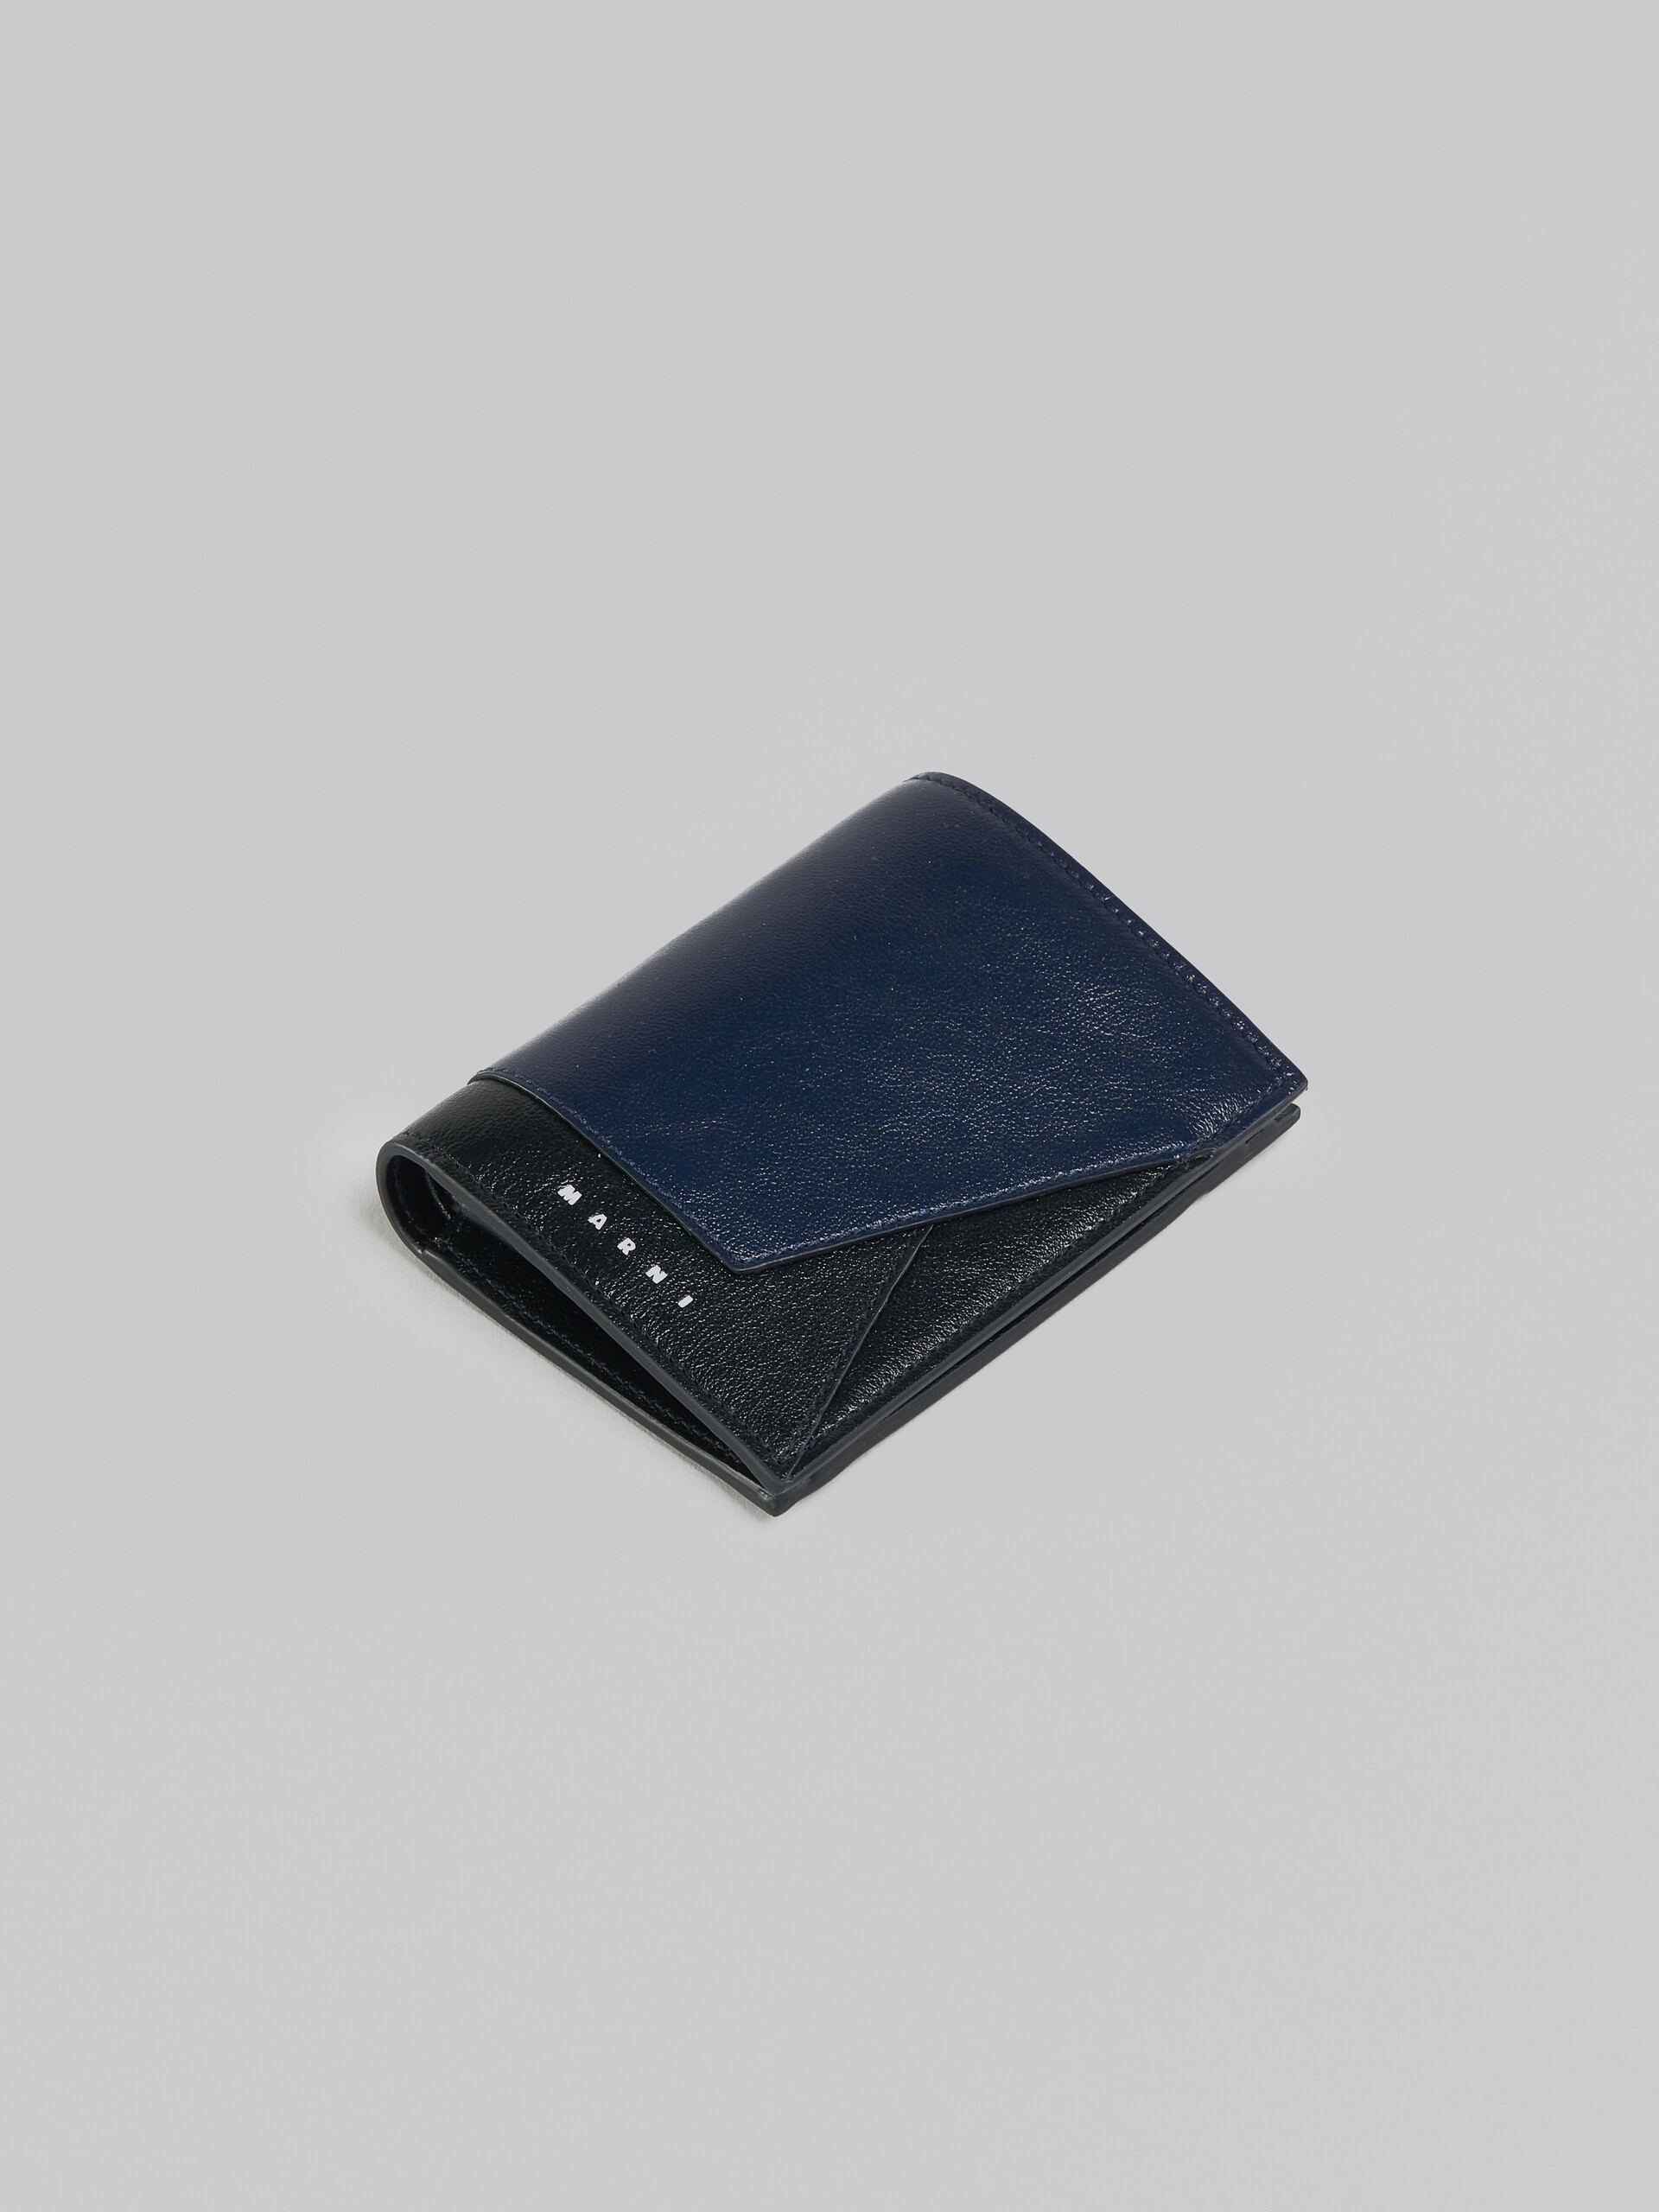 Portafoglio bi-fold in pelle blu e nera - Portafogli - Image 5